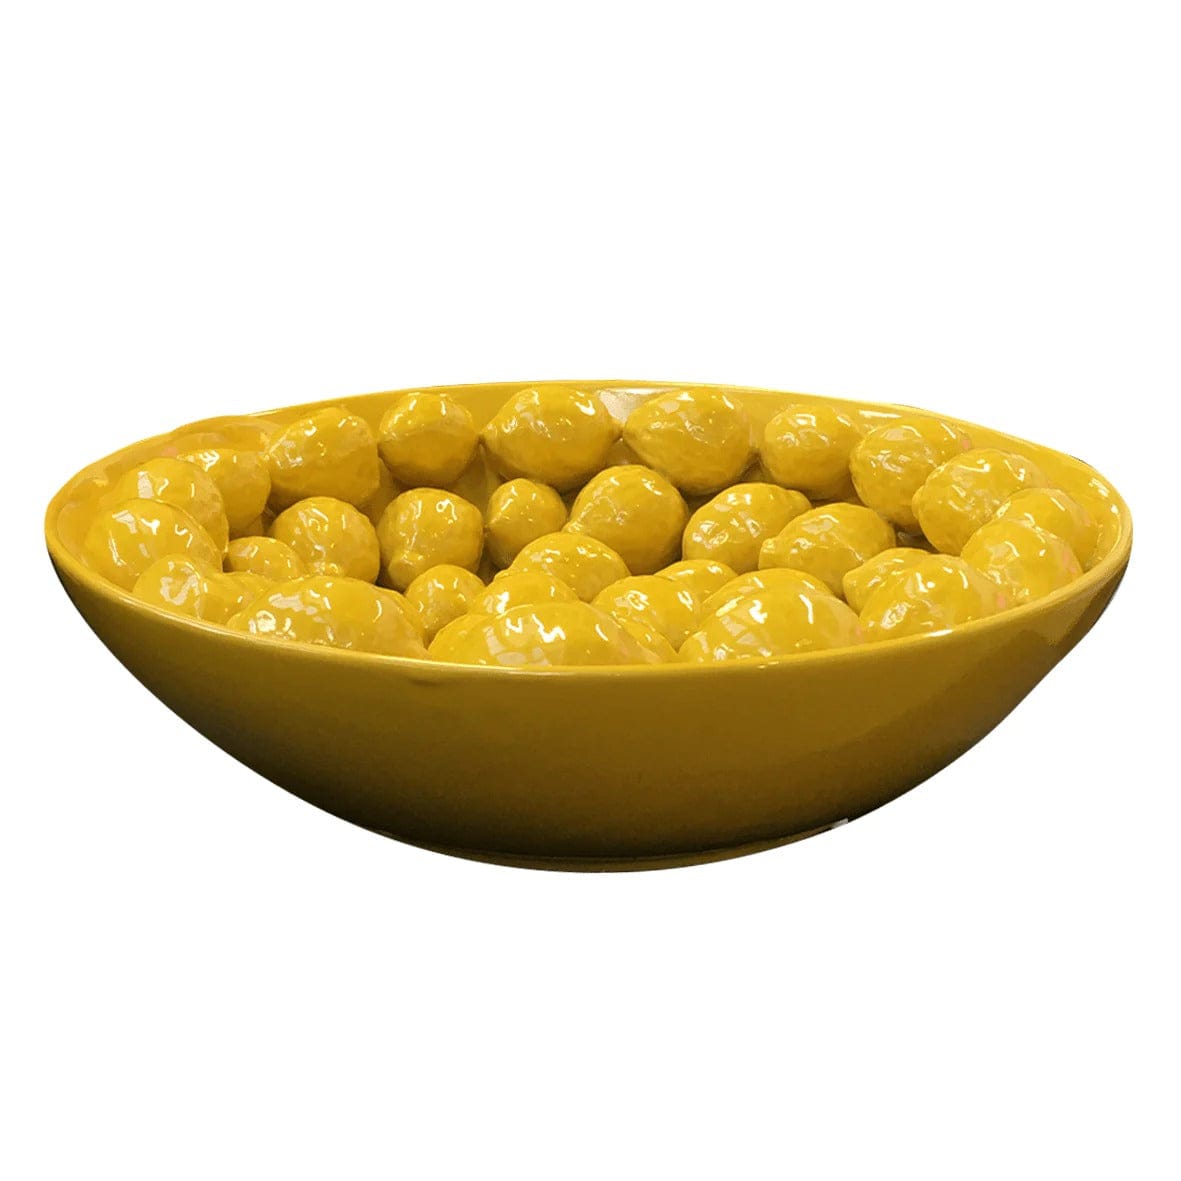 A giant lemon bowl